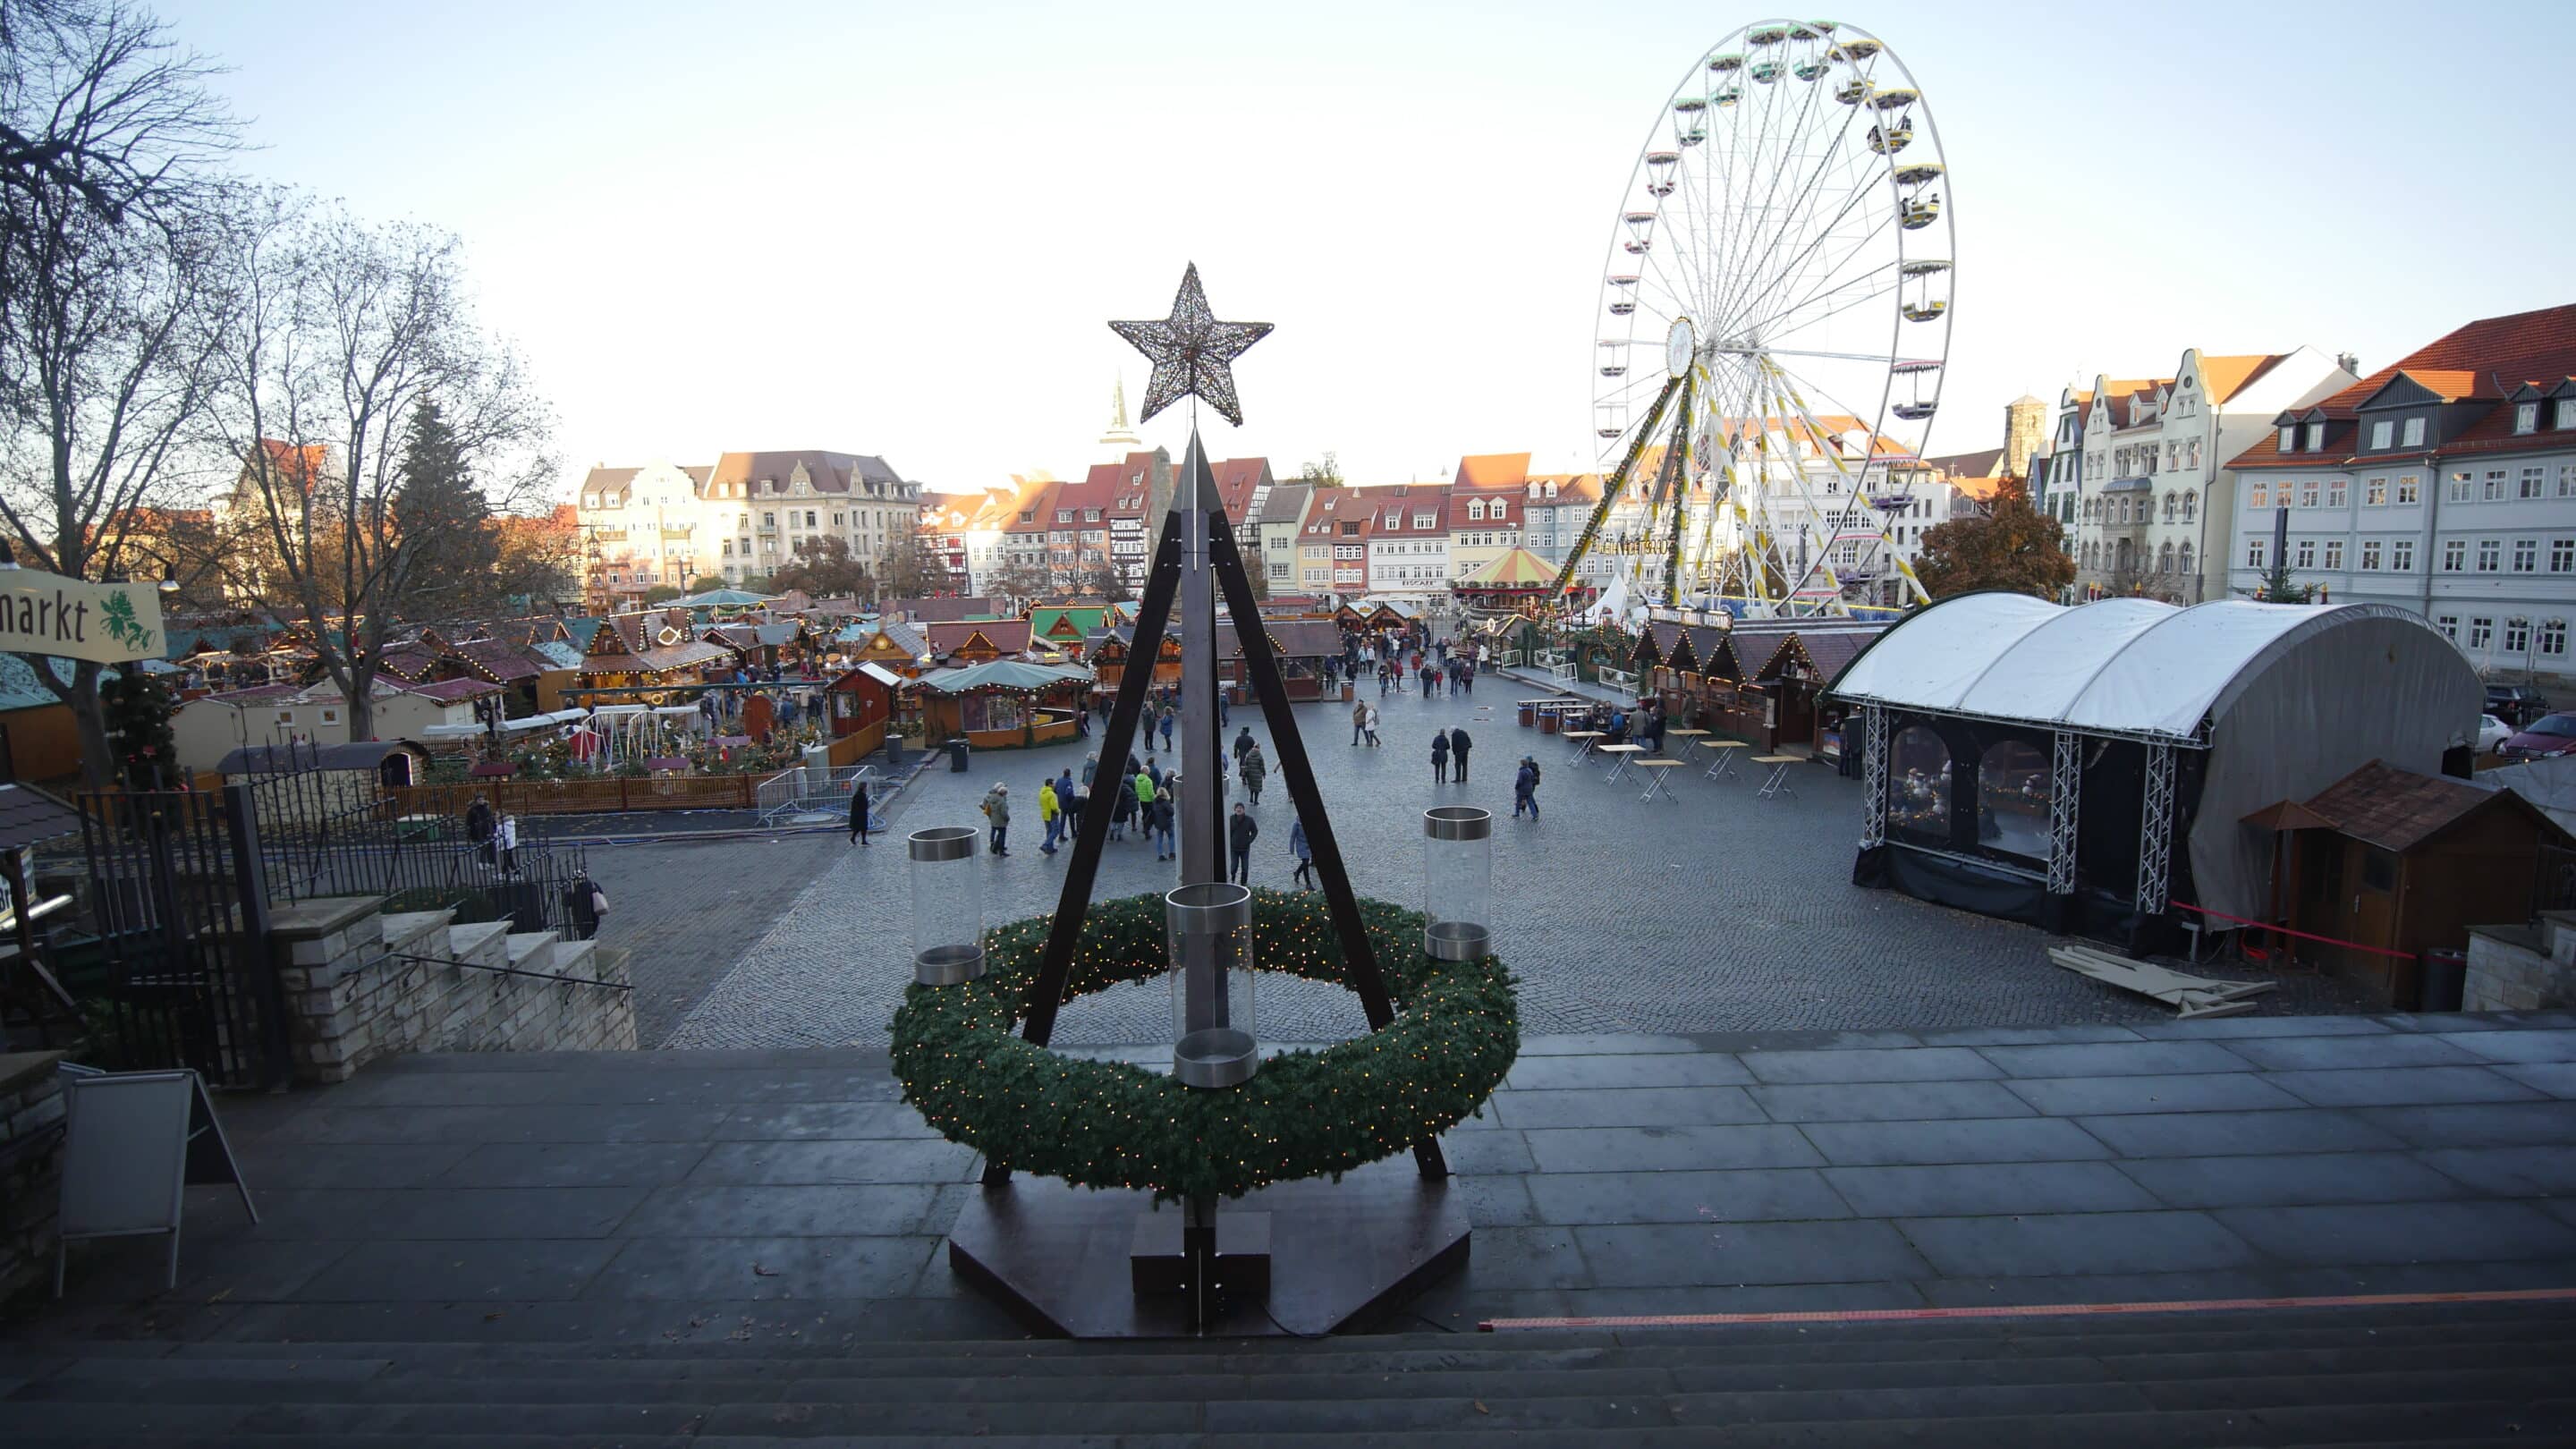 Adventskranz auf dem Weihnachtsmarkt. Domplatz Erfurt.